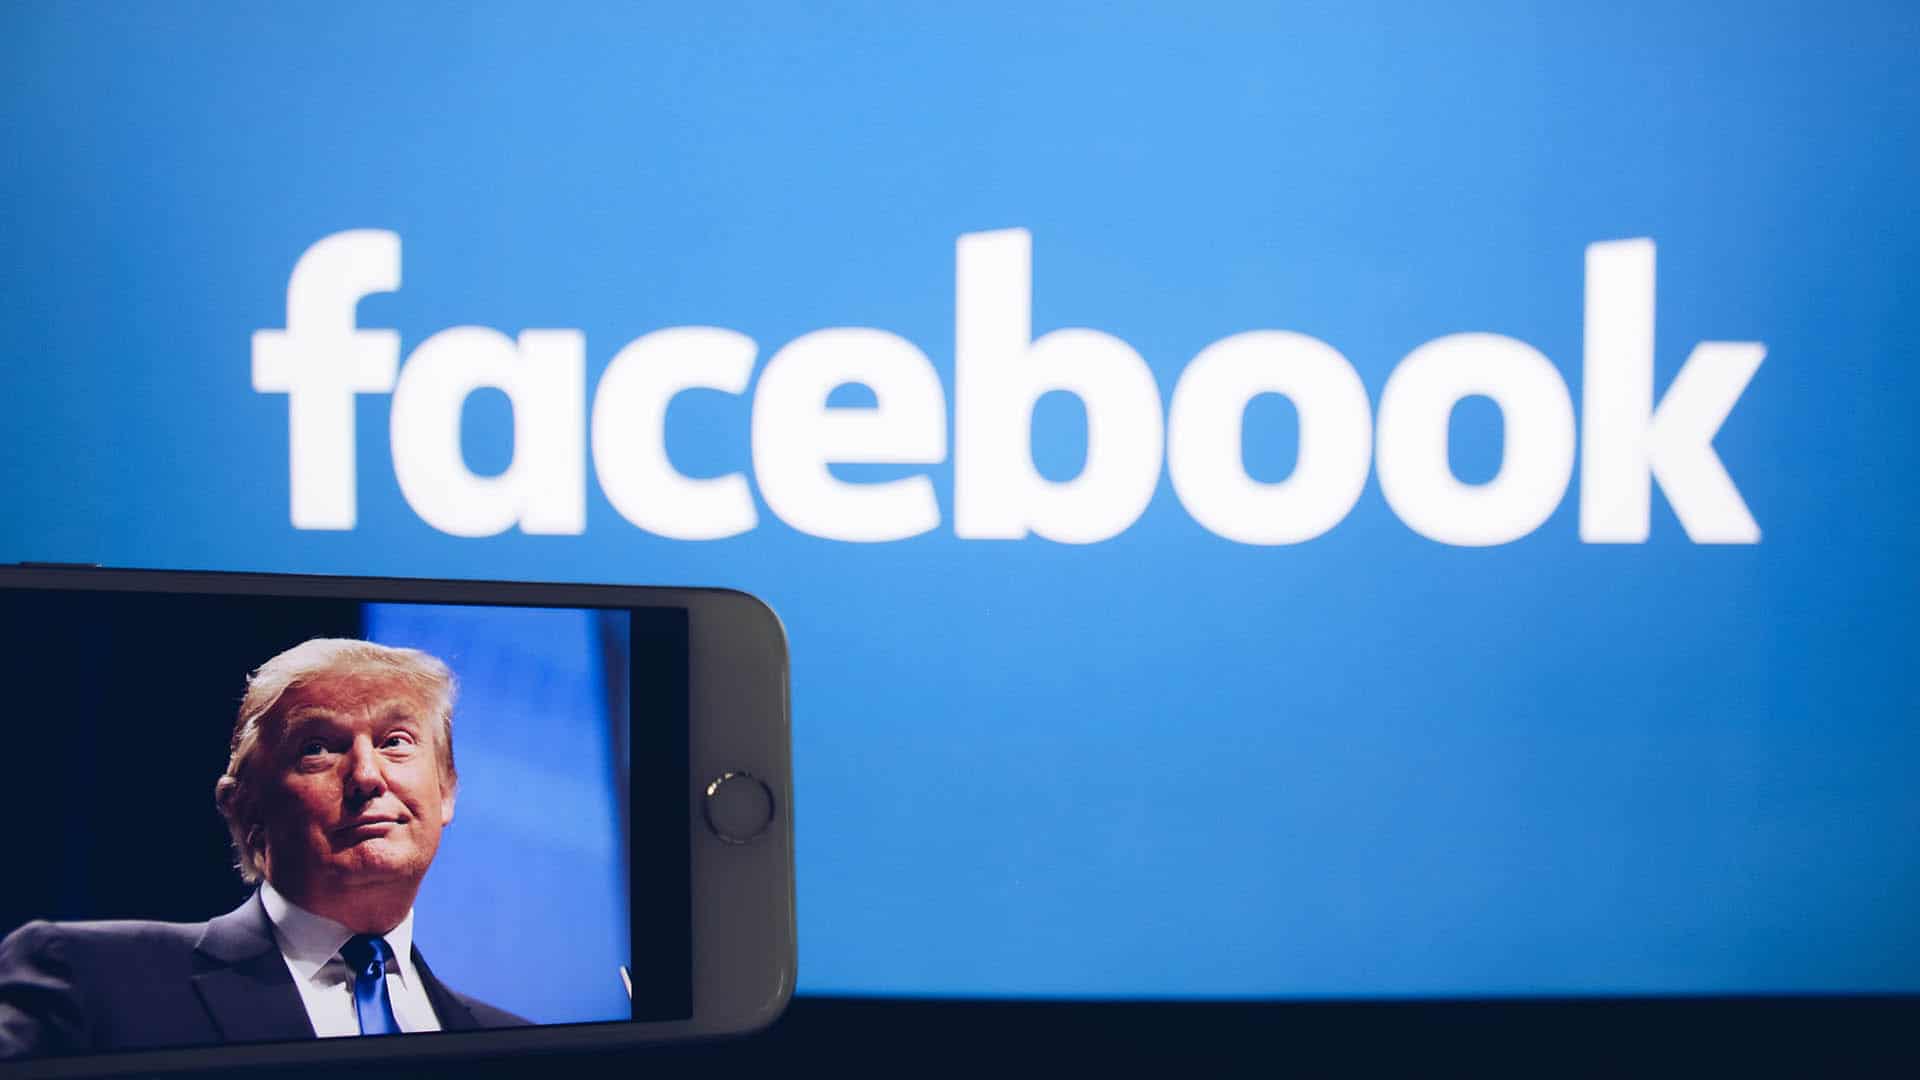 Bei der bevorstehenden US-Präsidentschaftswahl will Facebook dafür sorgen, dass verifizierte Prognosen und Ergebnisse Verbreitung finden, und nicht Fake News